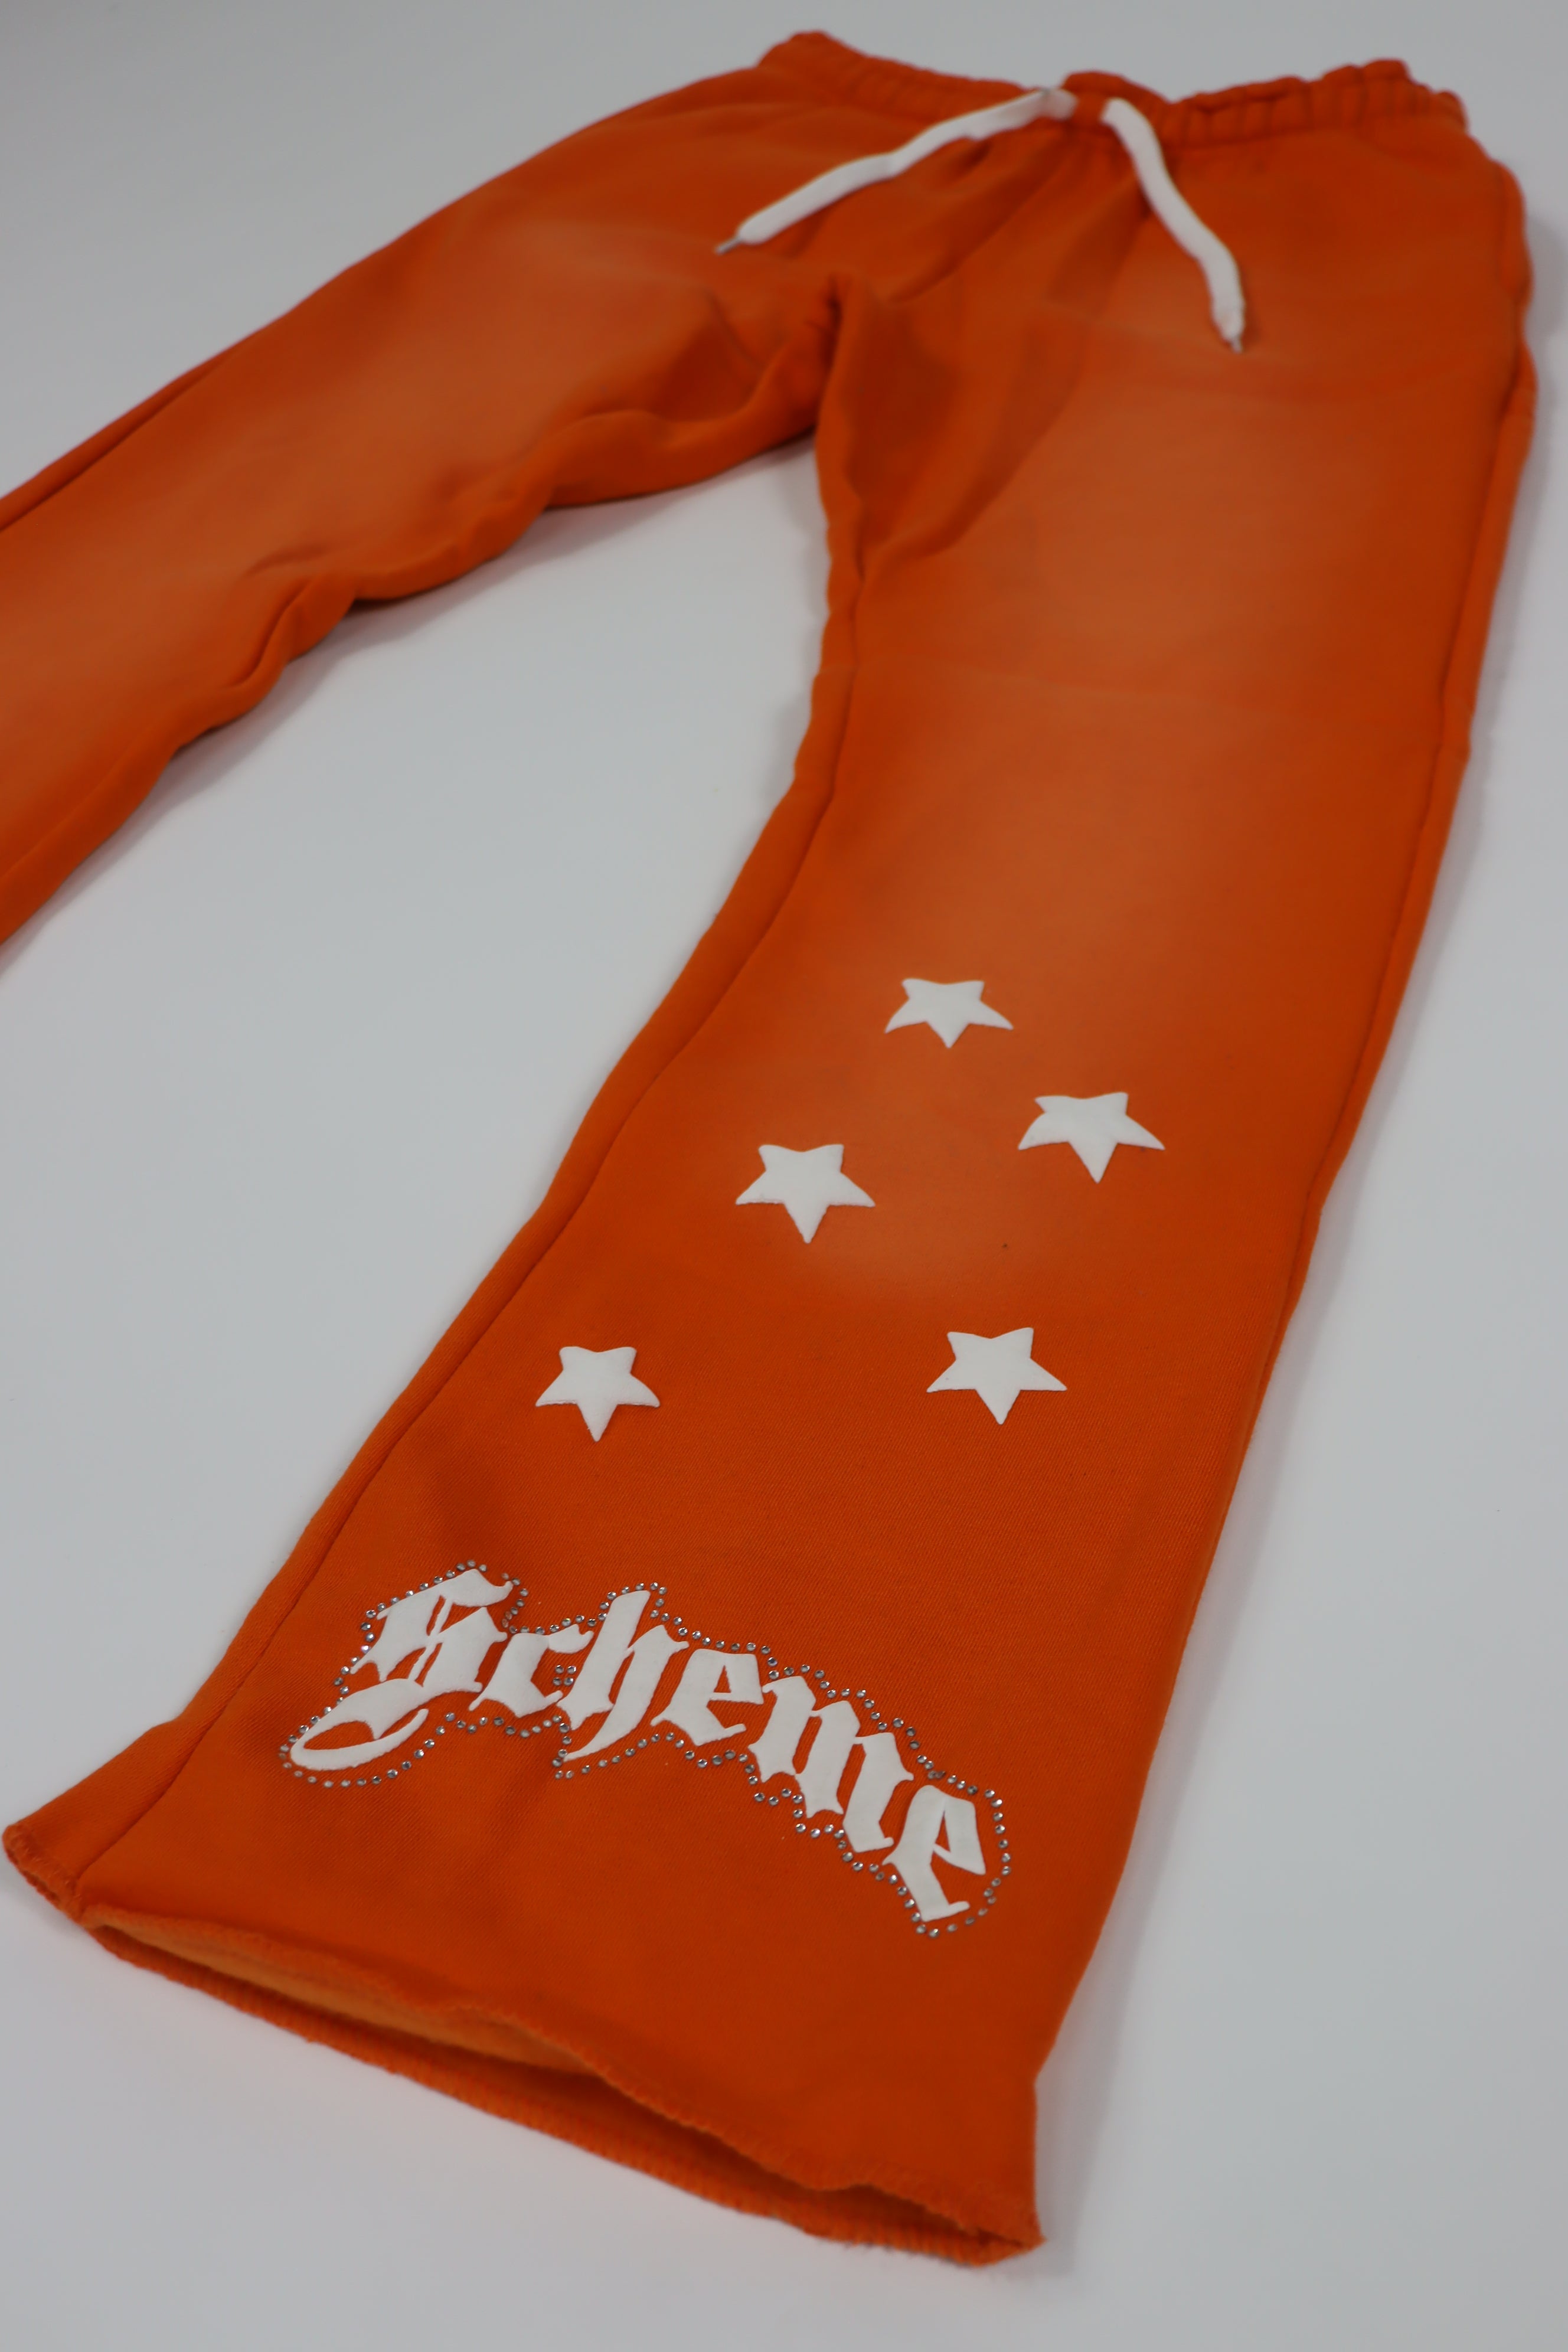 "Scheme" Rhinestone Star Puff - Washed Orange Flare Sweats - Scheme Wear